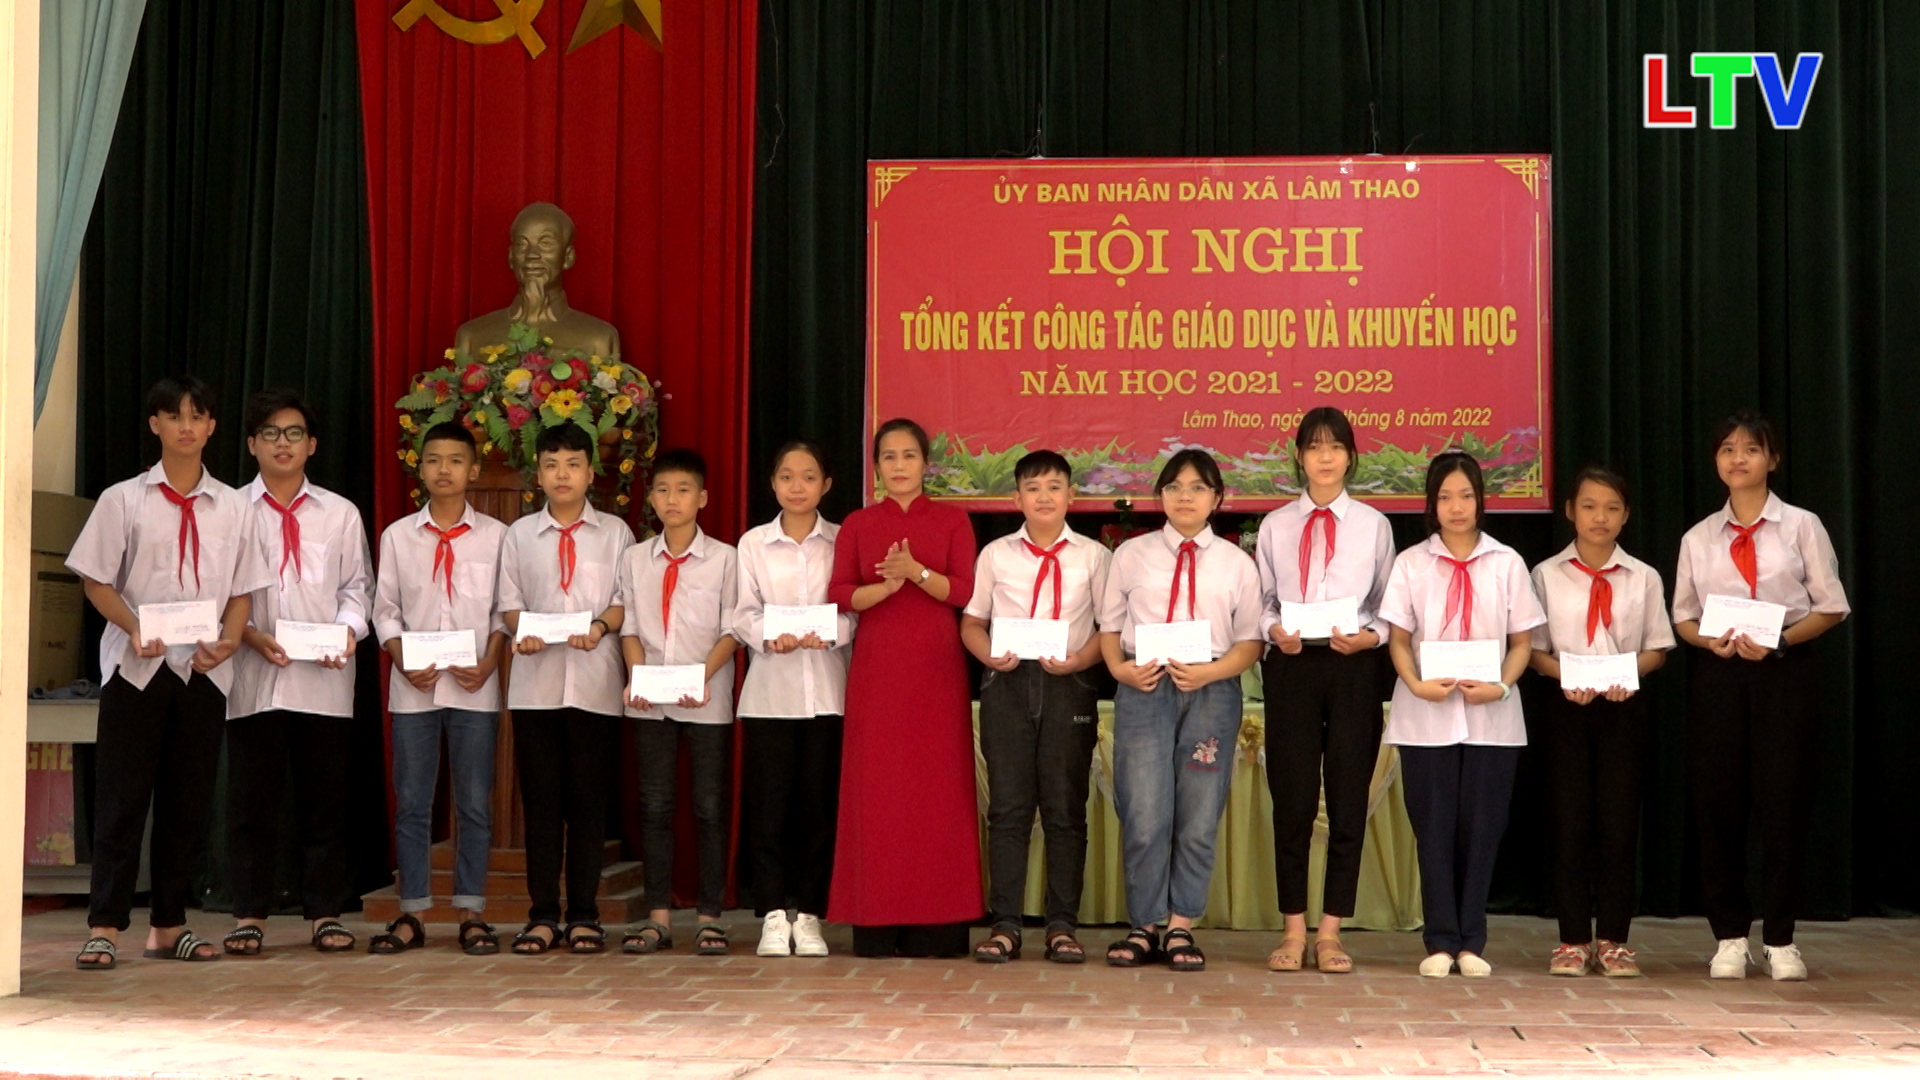 Lâm Thao tổng kết công tác giáo dục và khuyến học, trao thưởng học sinh và giáo viên.mp4